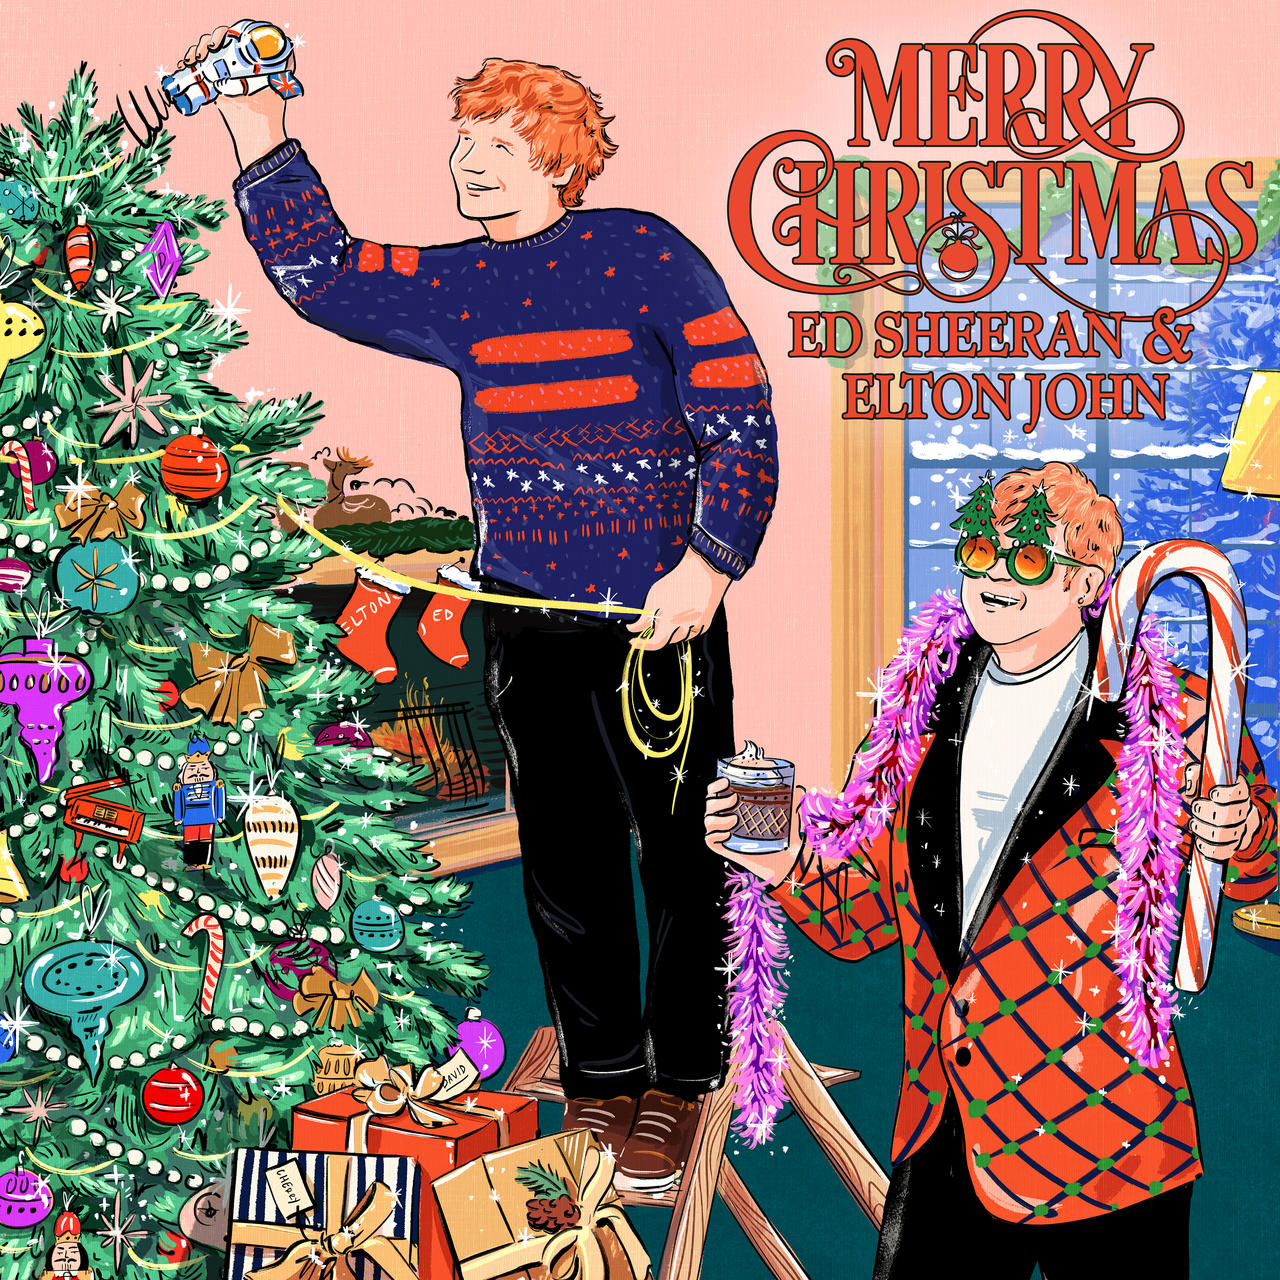 La Navidad une a Elton y Ed Sheeran con el sencillo a beneficio Merry Christmas